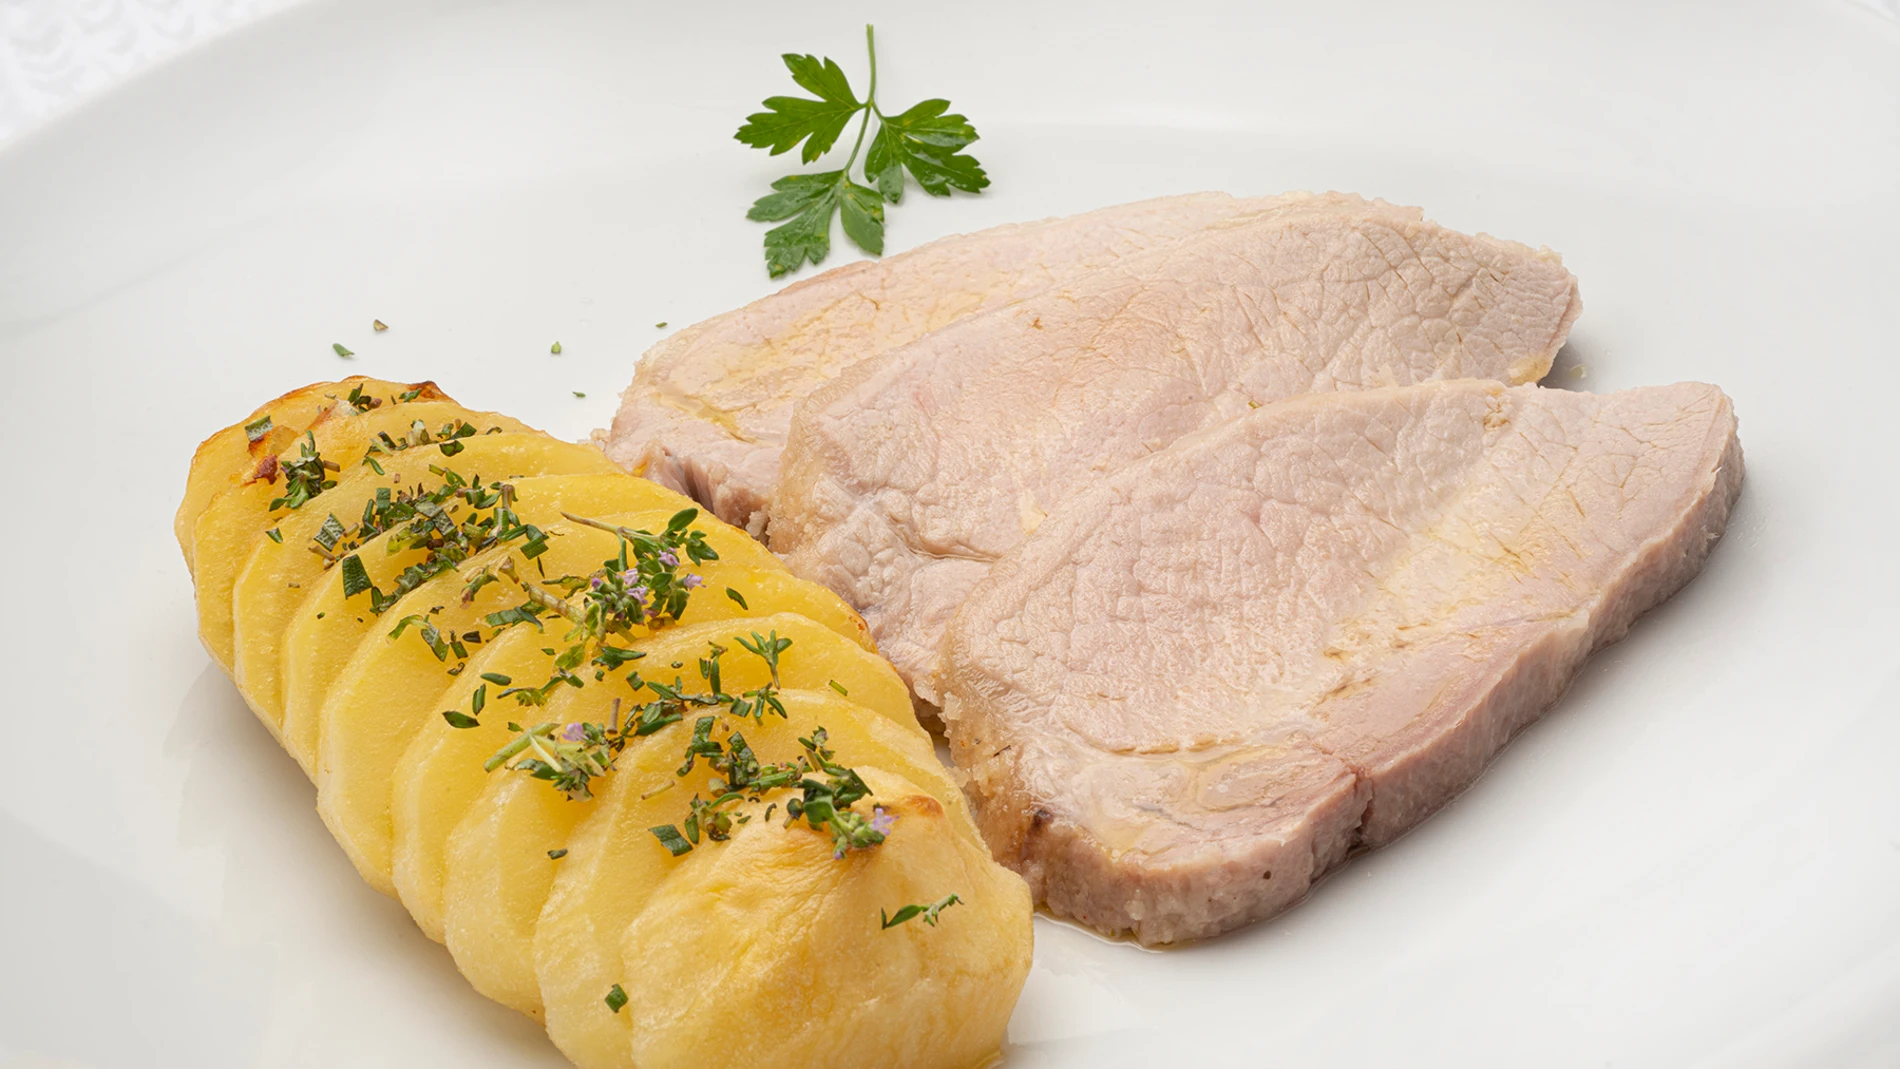 Receta fácil de Karlos Arguiñano: lomo de cerdo a la sal con patatas asadas